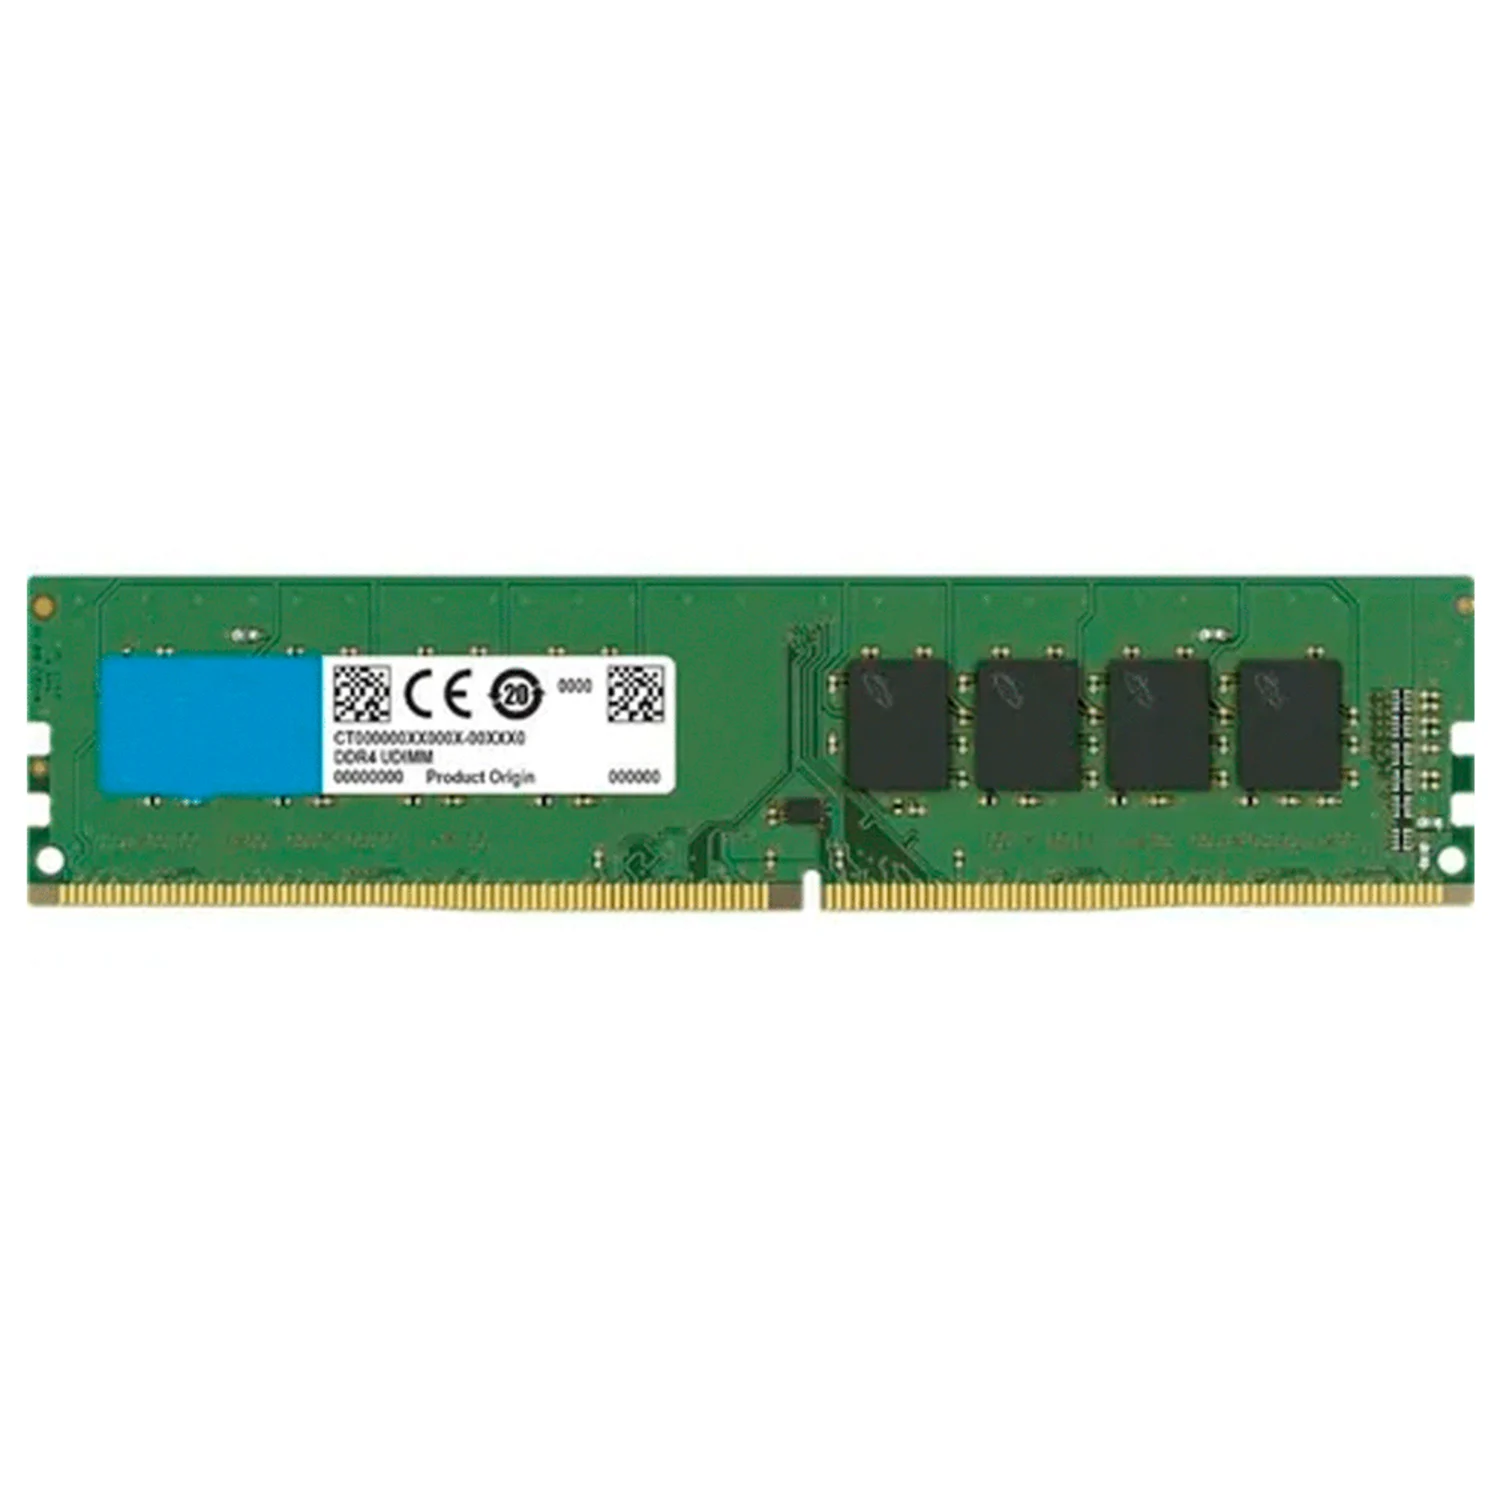 Memória RAM 8GB / DDR3 / 1333/1600/1866mhz / UDIMM PULL / 1x8GB